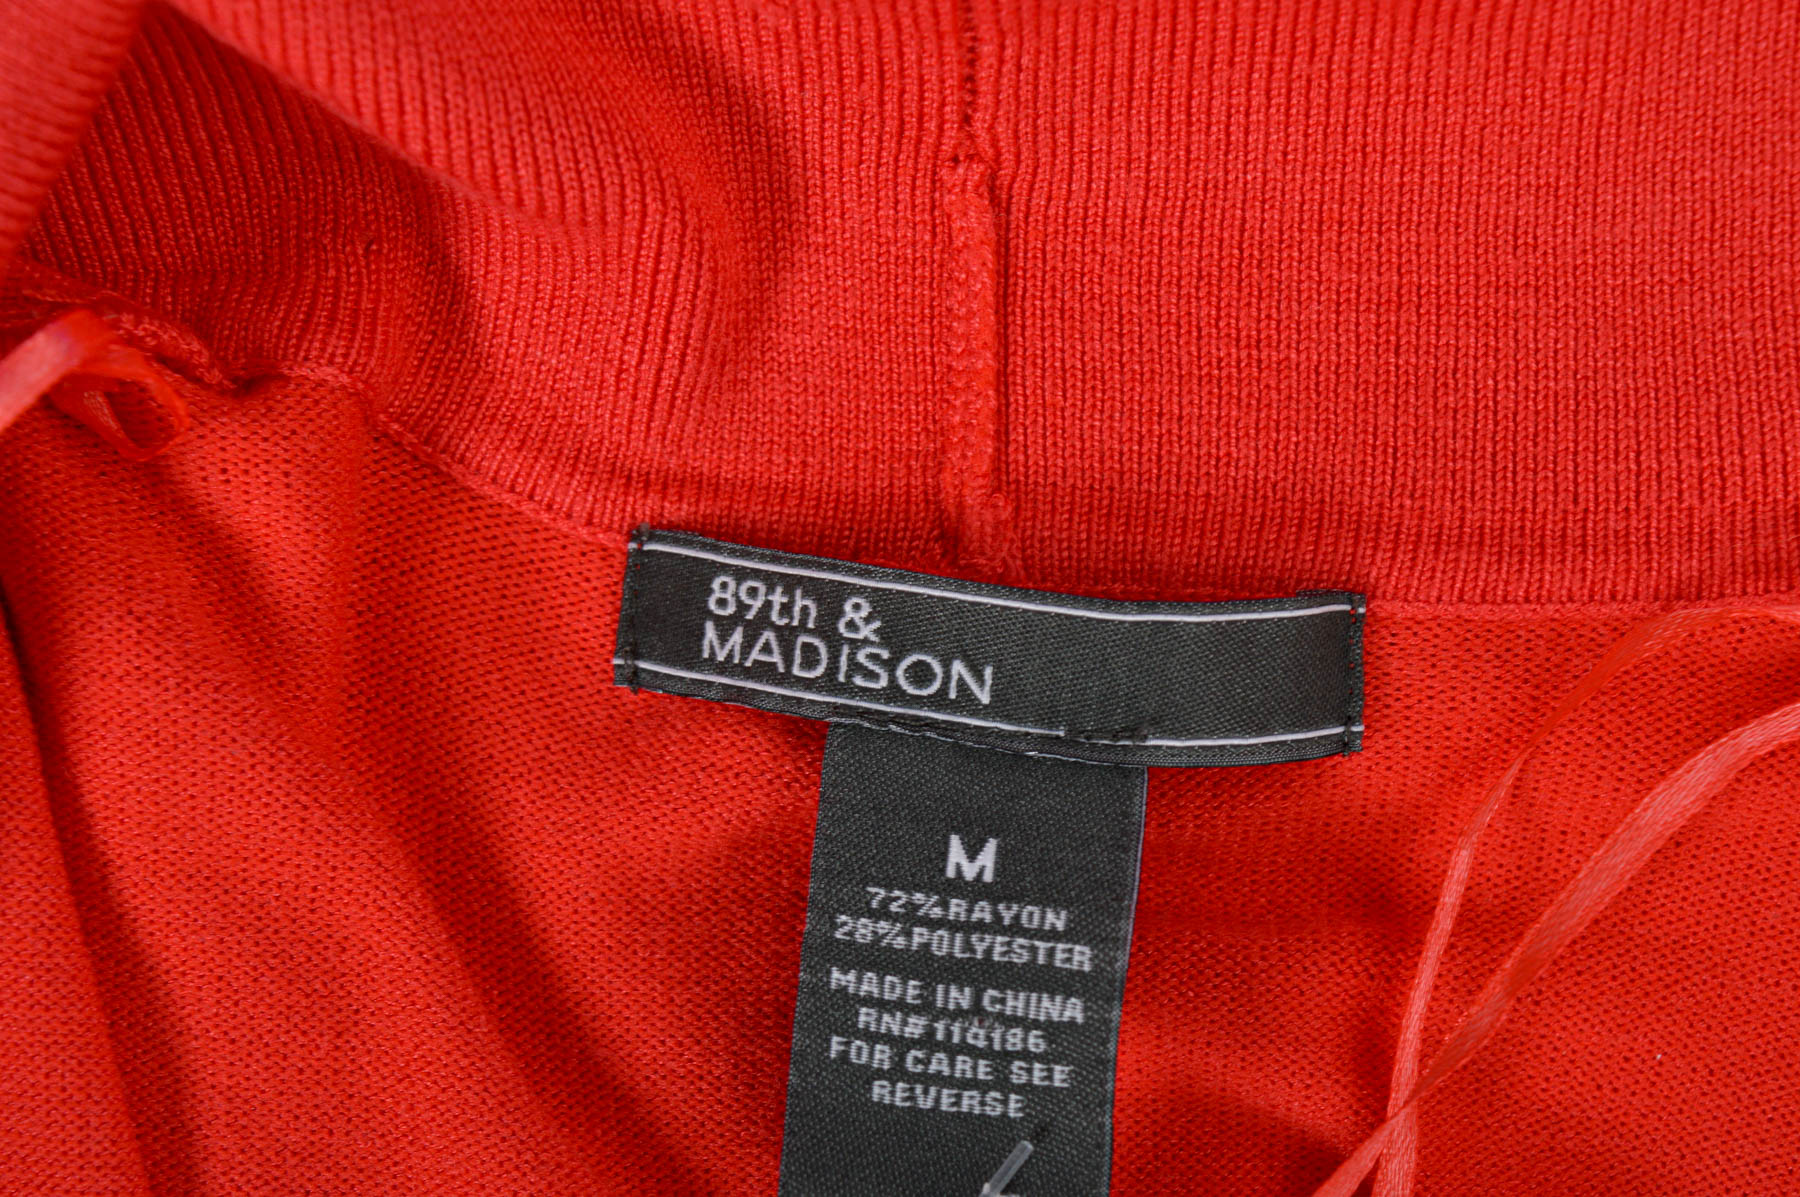 Cardigan / Jachetă de damă - 89th & MADISON - 2